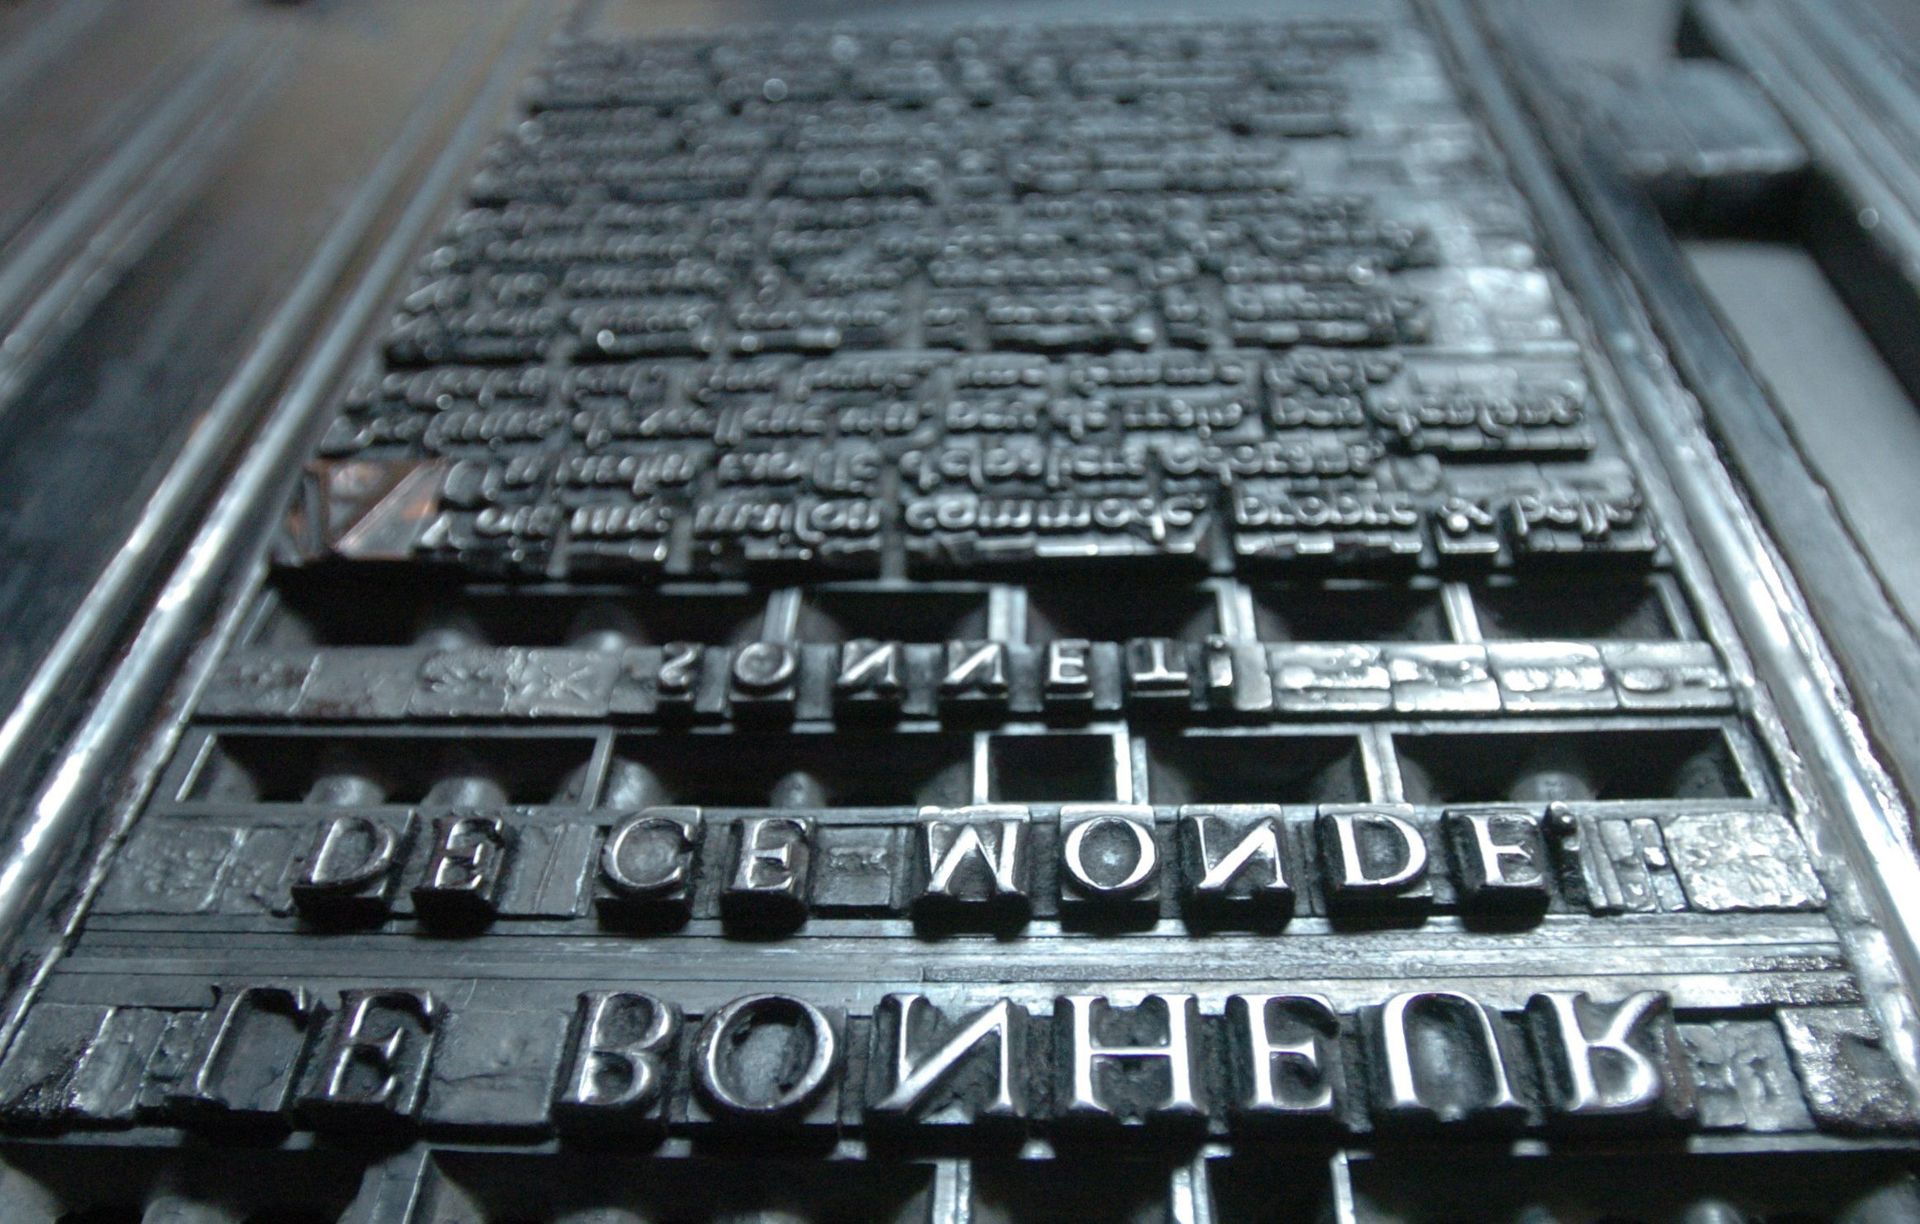 Des centaines de matrices ont imprimé certains des plus grands textes de l’humanité